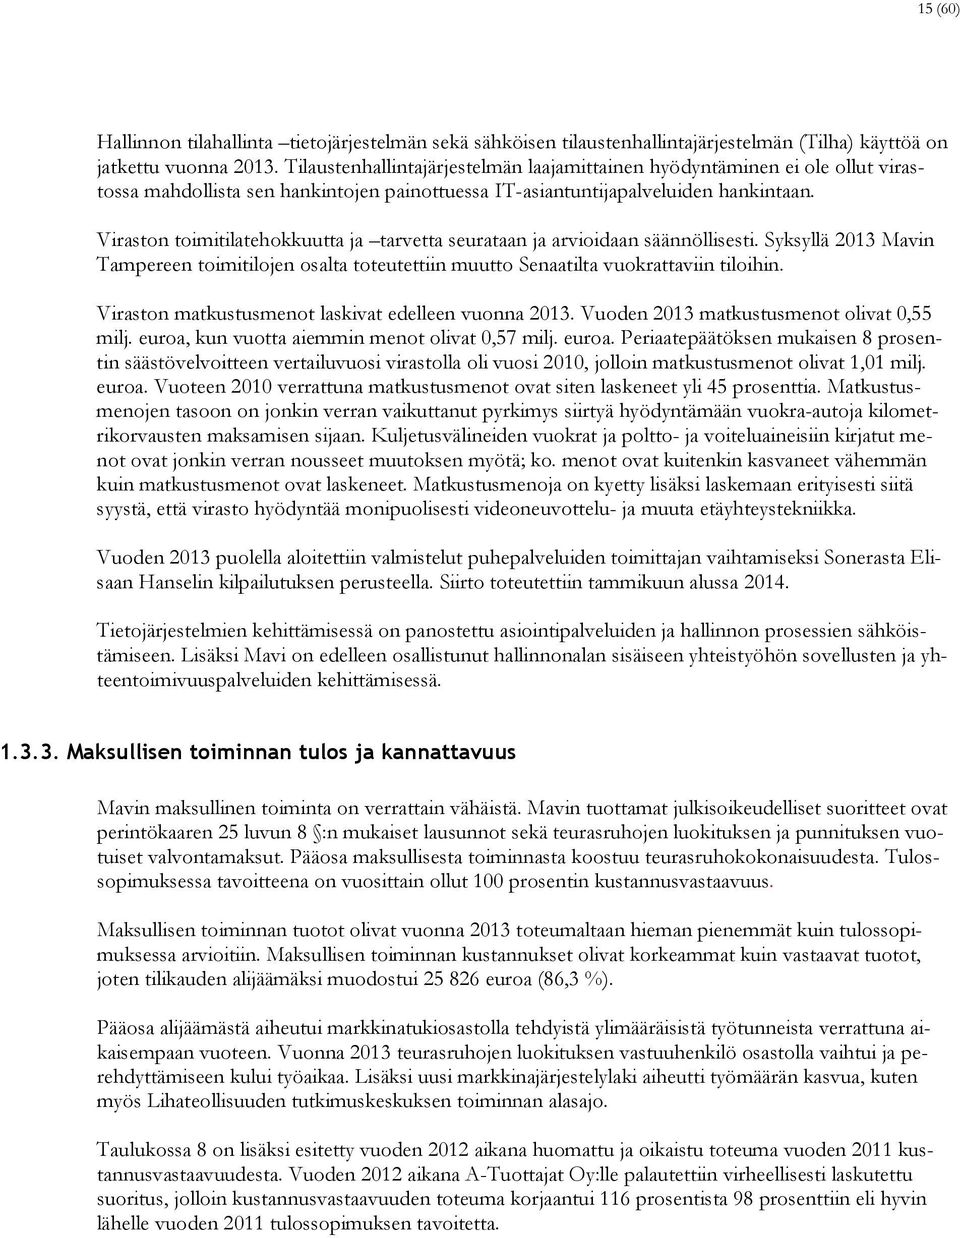 Viraston toimitilatehokkuutta ja tarvetta seurataan ja arvioidaan säännöllisesti. Syksyllä 2013 Mavin Tampereen toimitilojen osalta toteutettiin muutto Senaatilta vuokrattaviin tiloihin.